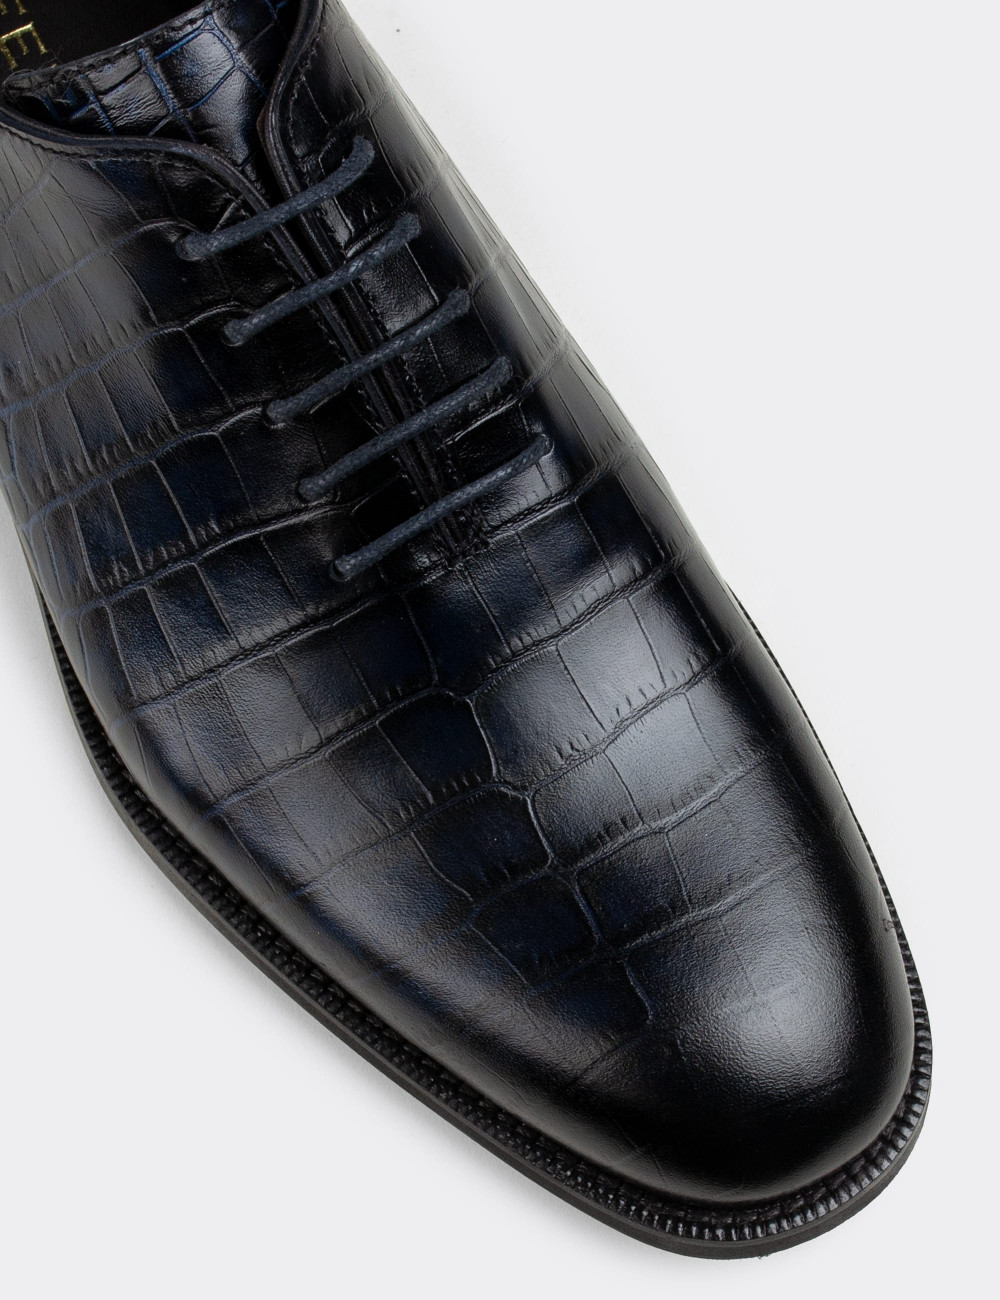 Hakiki Deri Lacivert Kroko Klasik Erkek Ayakkabı - 01830MLCVN01